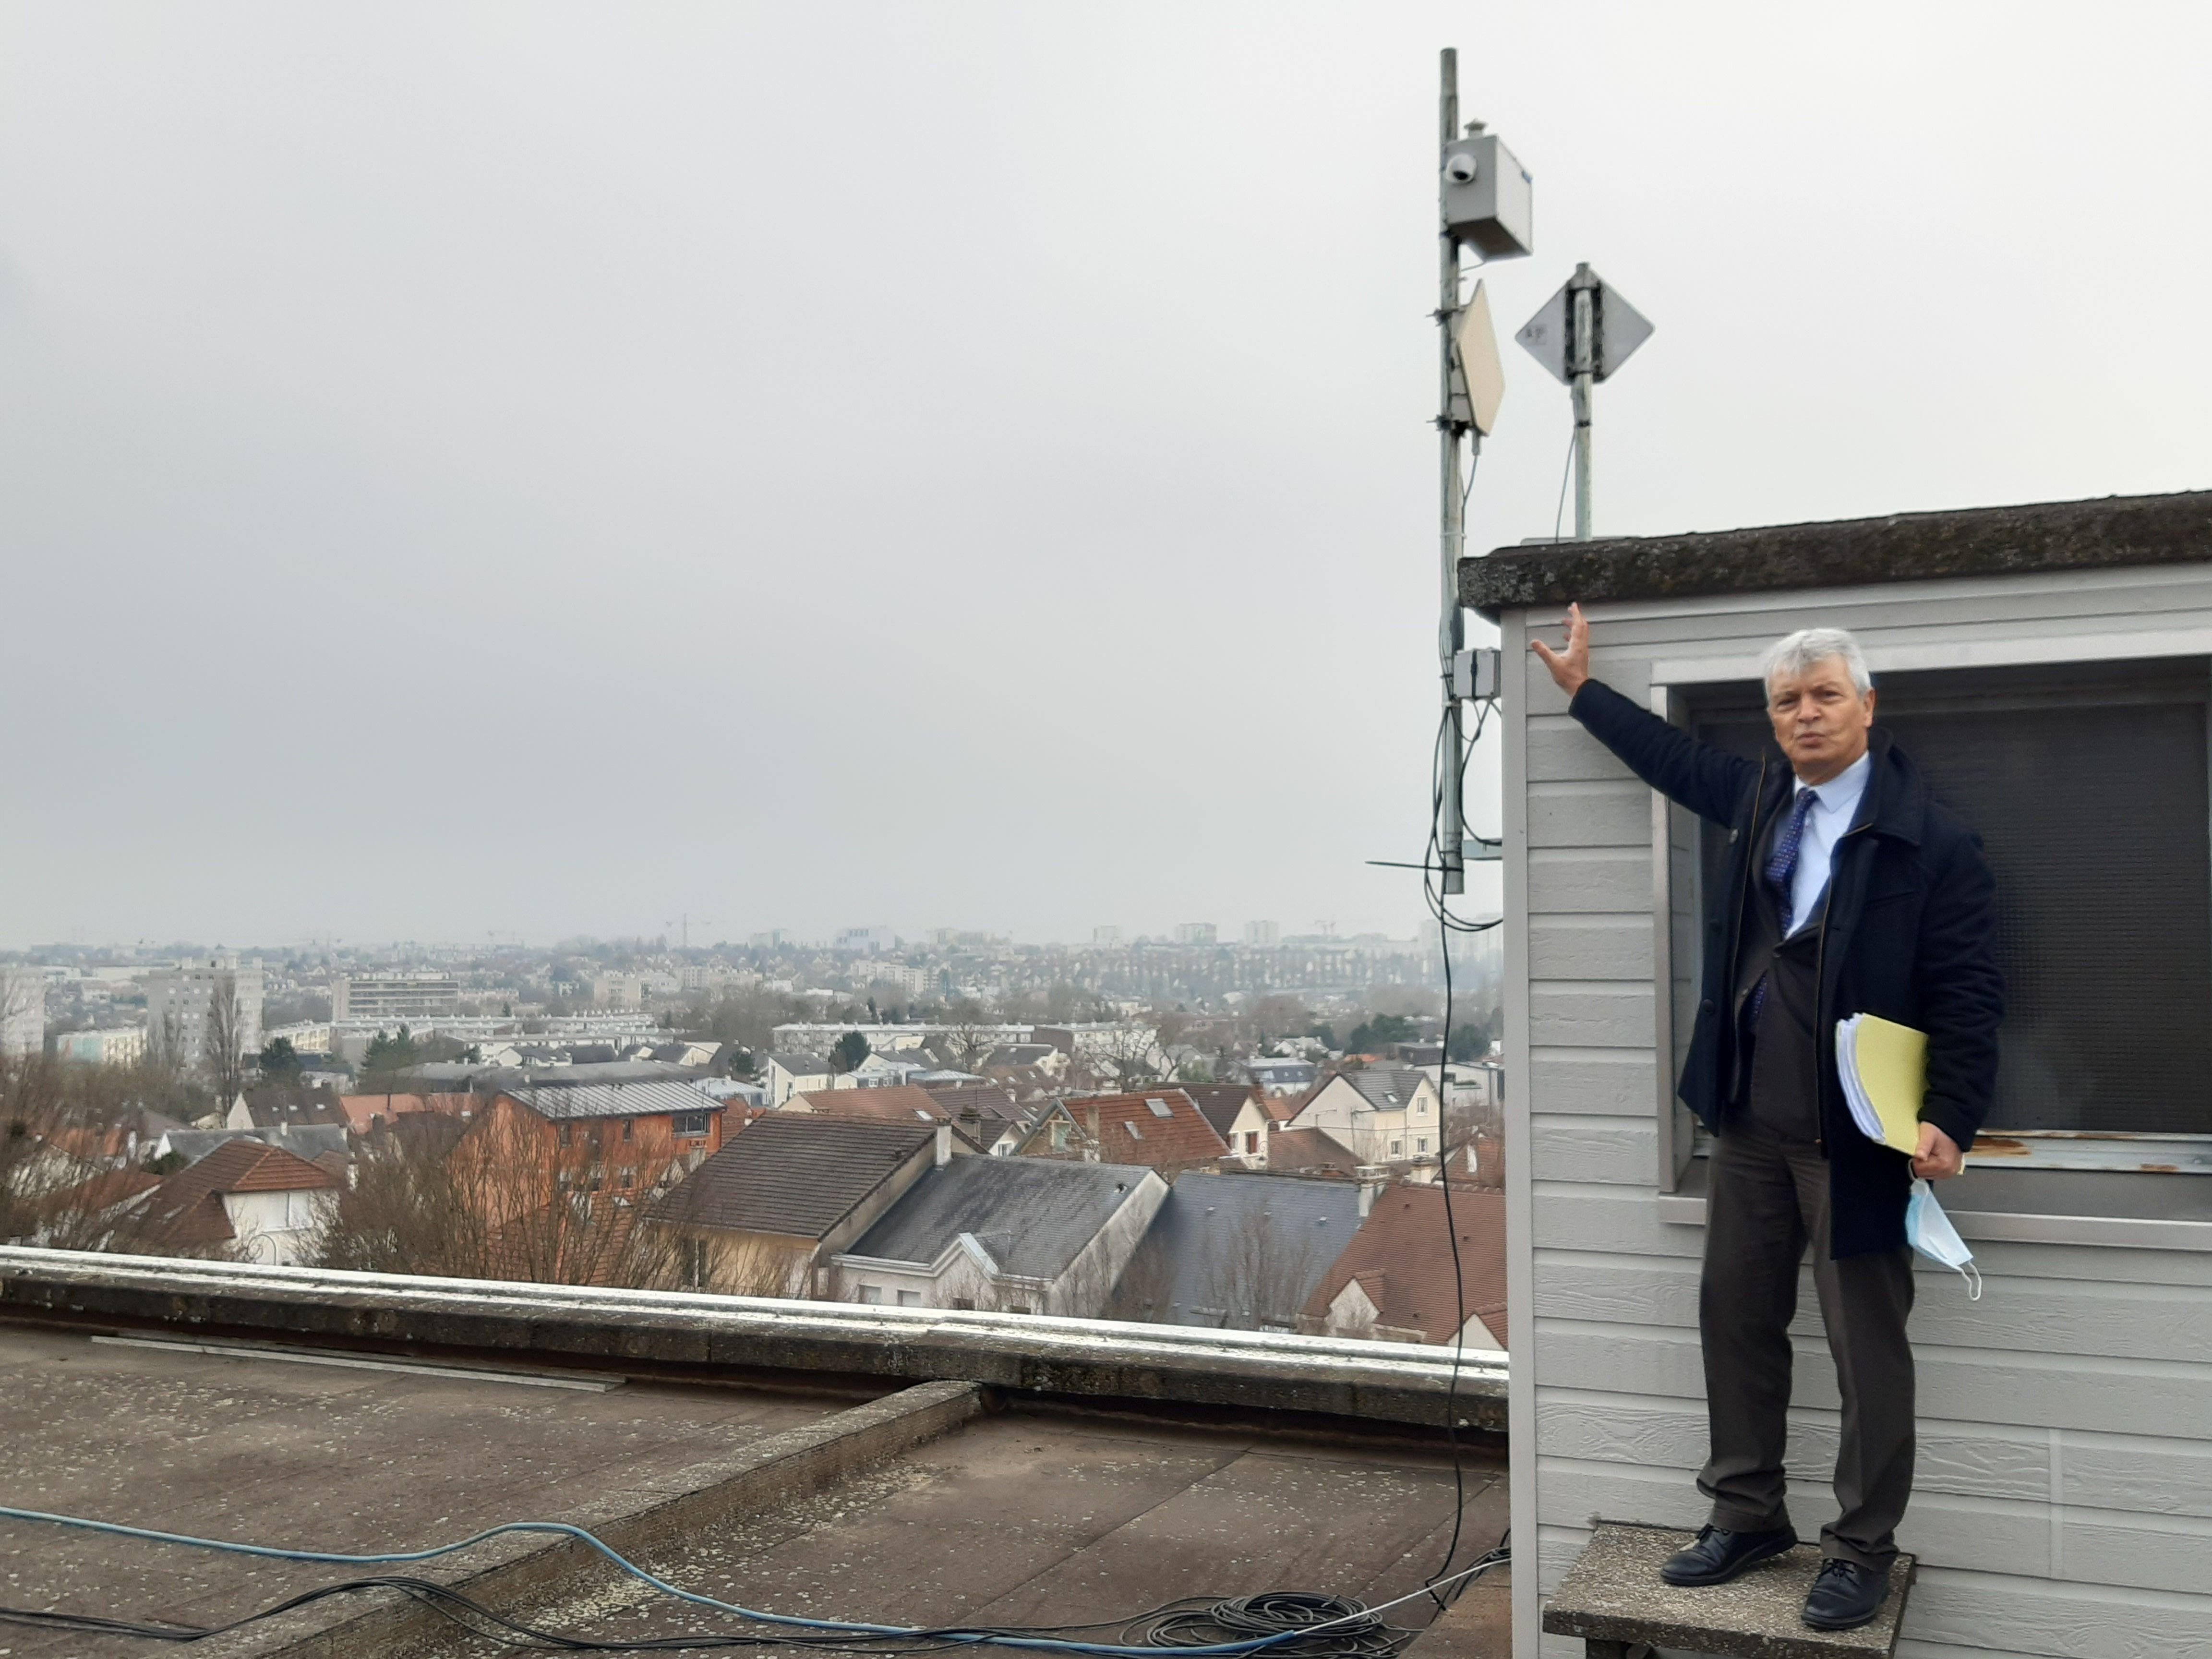 Antony (Hauts-de-Seine), le jeudi 27 janvier. Ioannis Vouldoukis, conseiller municipal, montre un capteur installé sur le toit de l'hôtel de ville qui permet d'obtenir en temps réel la liste des pollens allergisants dans ce secteur. LP/M.L.